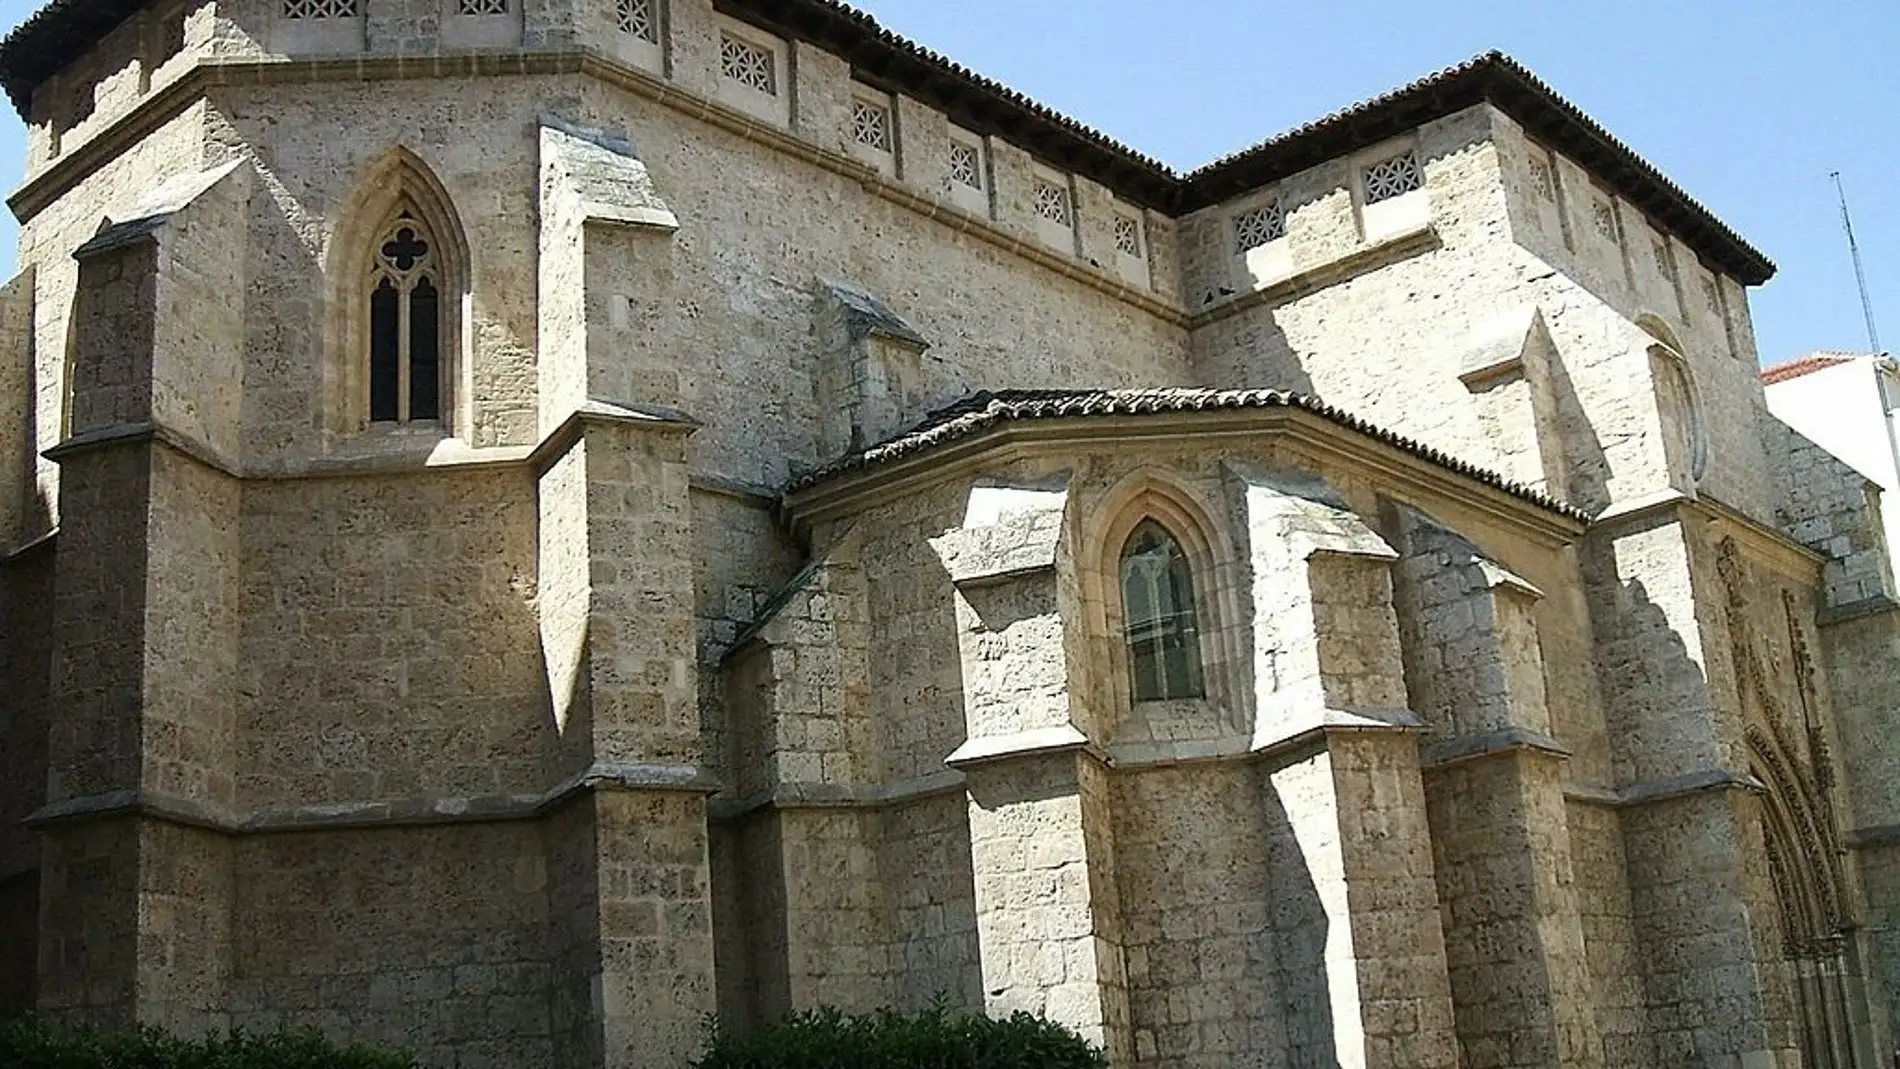 Monasterio de Santa Clara de Palencia: historia y datos curiosos que te sorprenderán